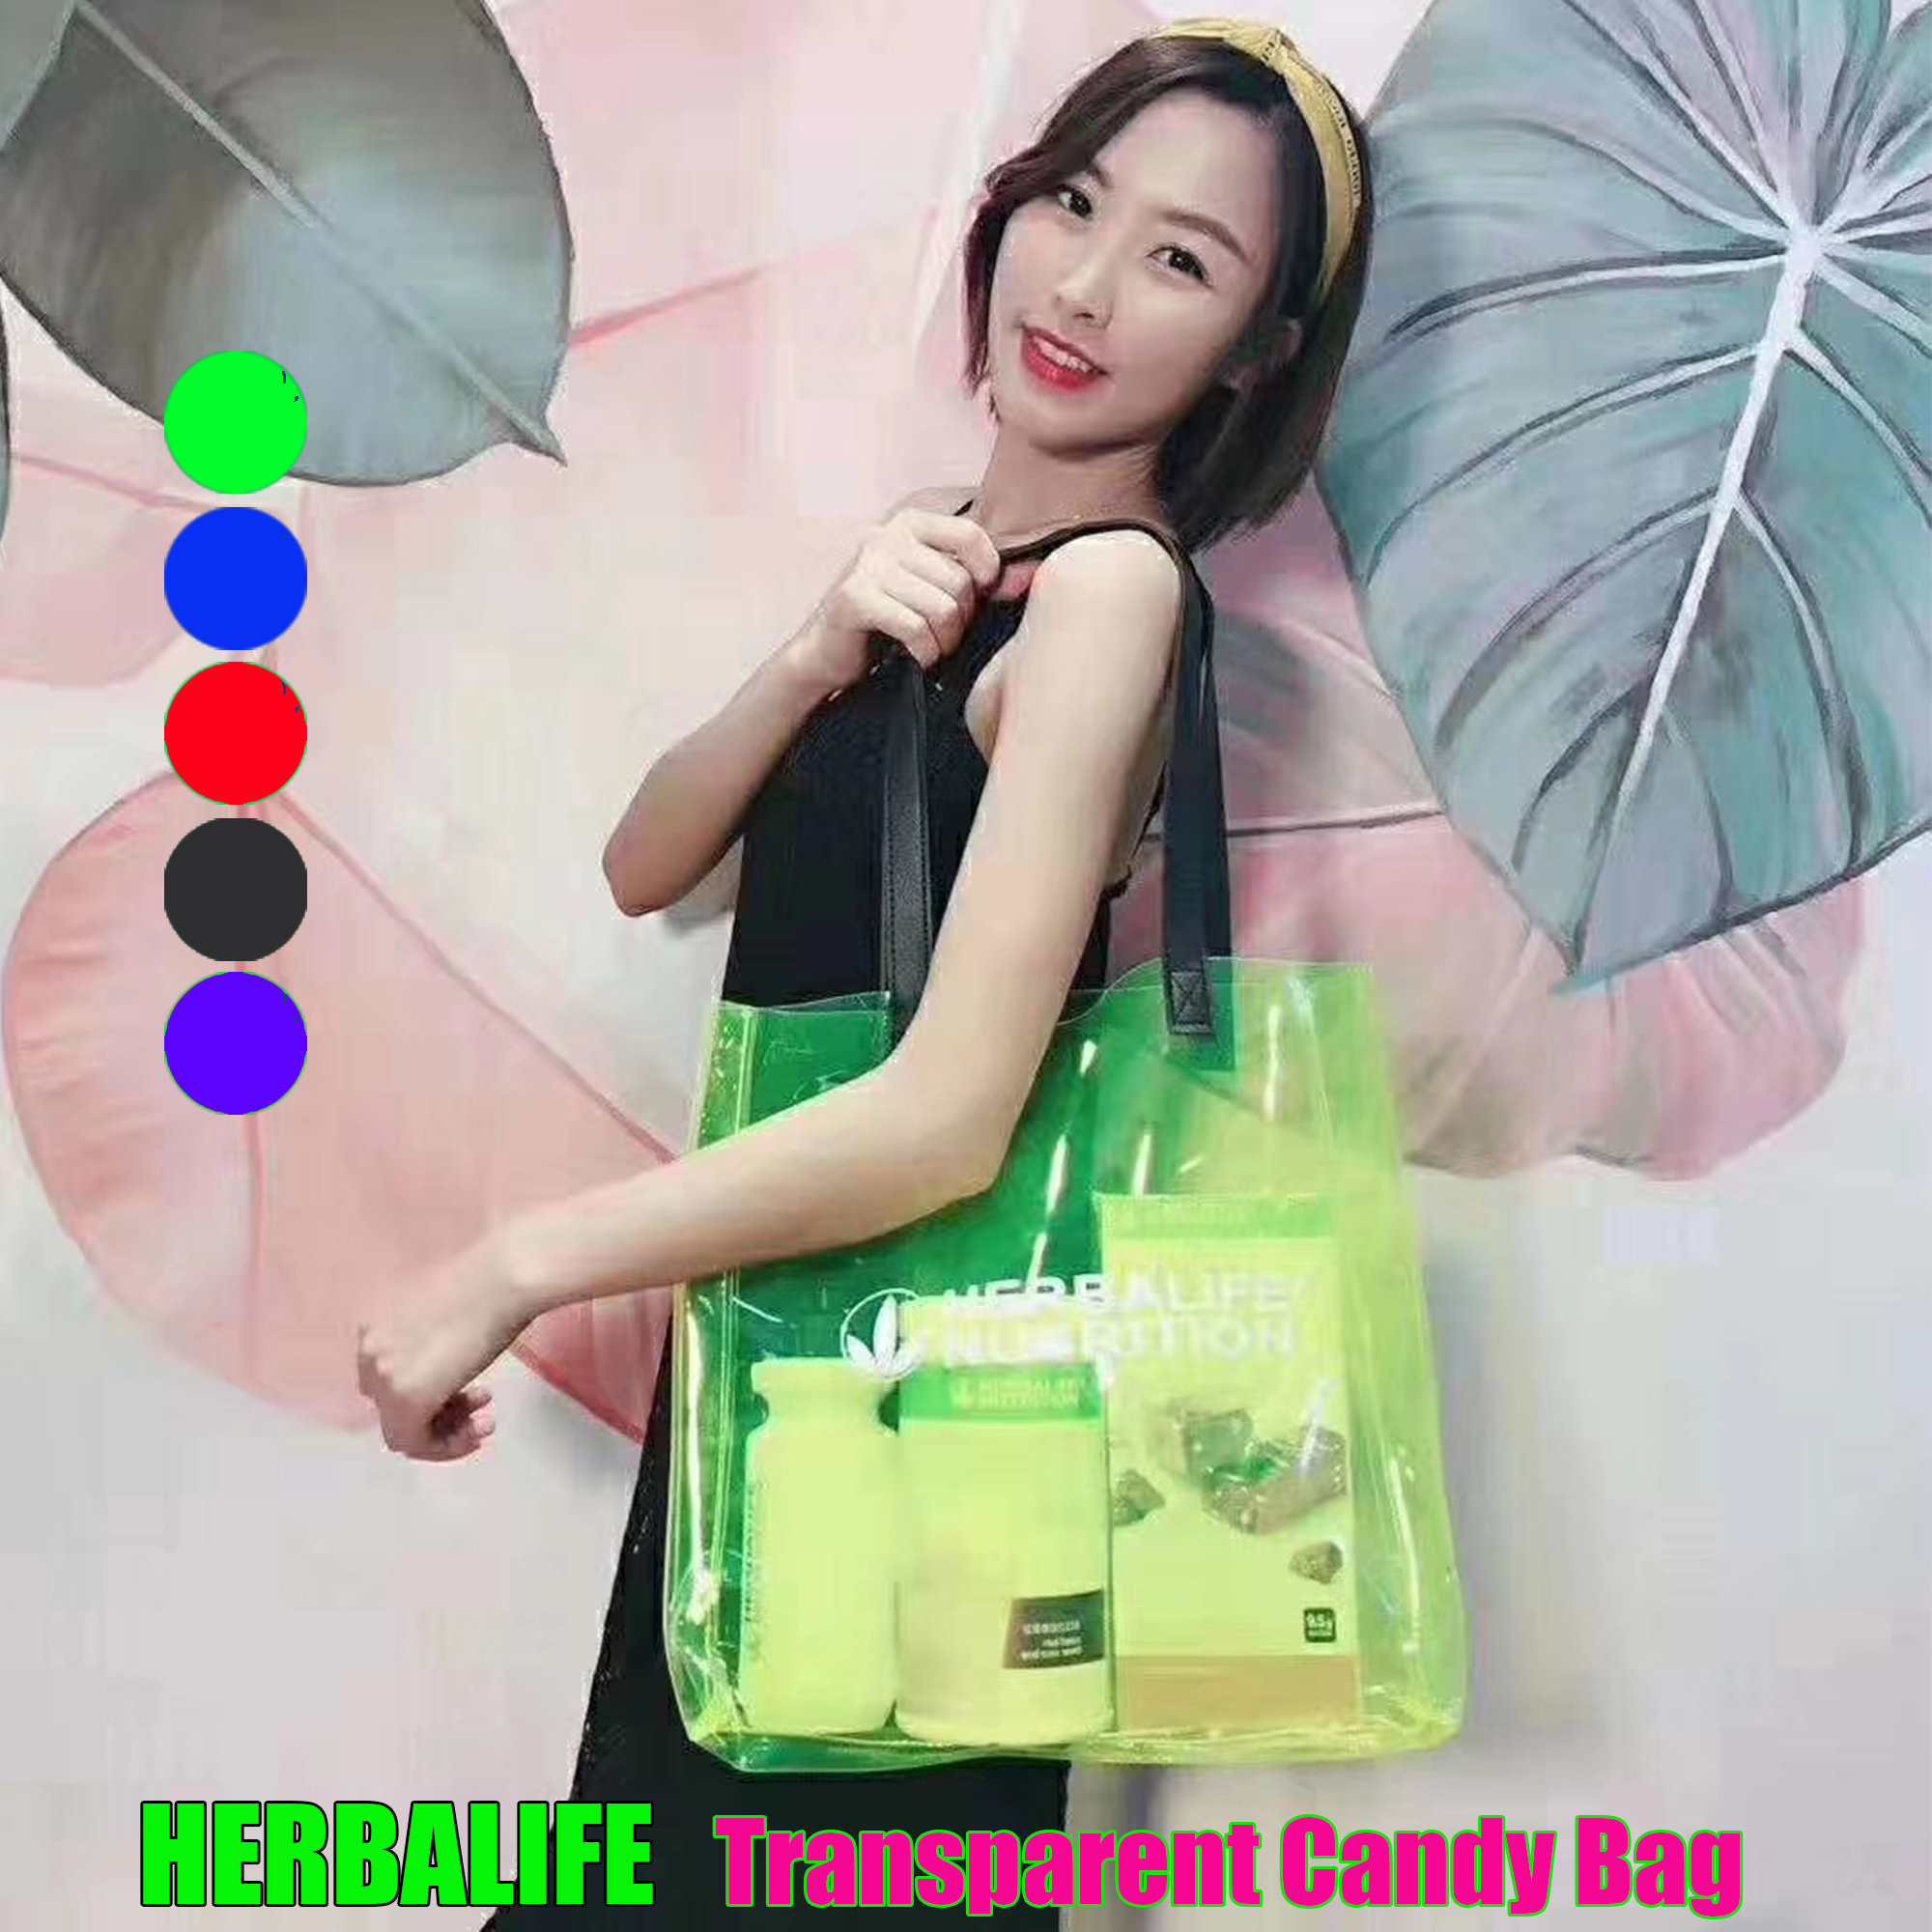 LOVE Large Transparent Jelly Shoulder Tote Bag – Mode LA